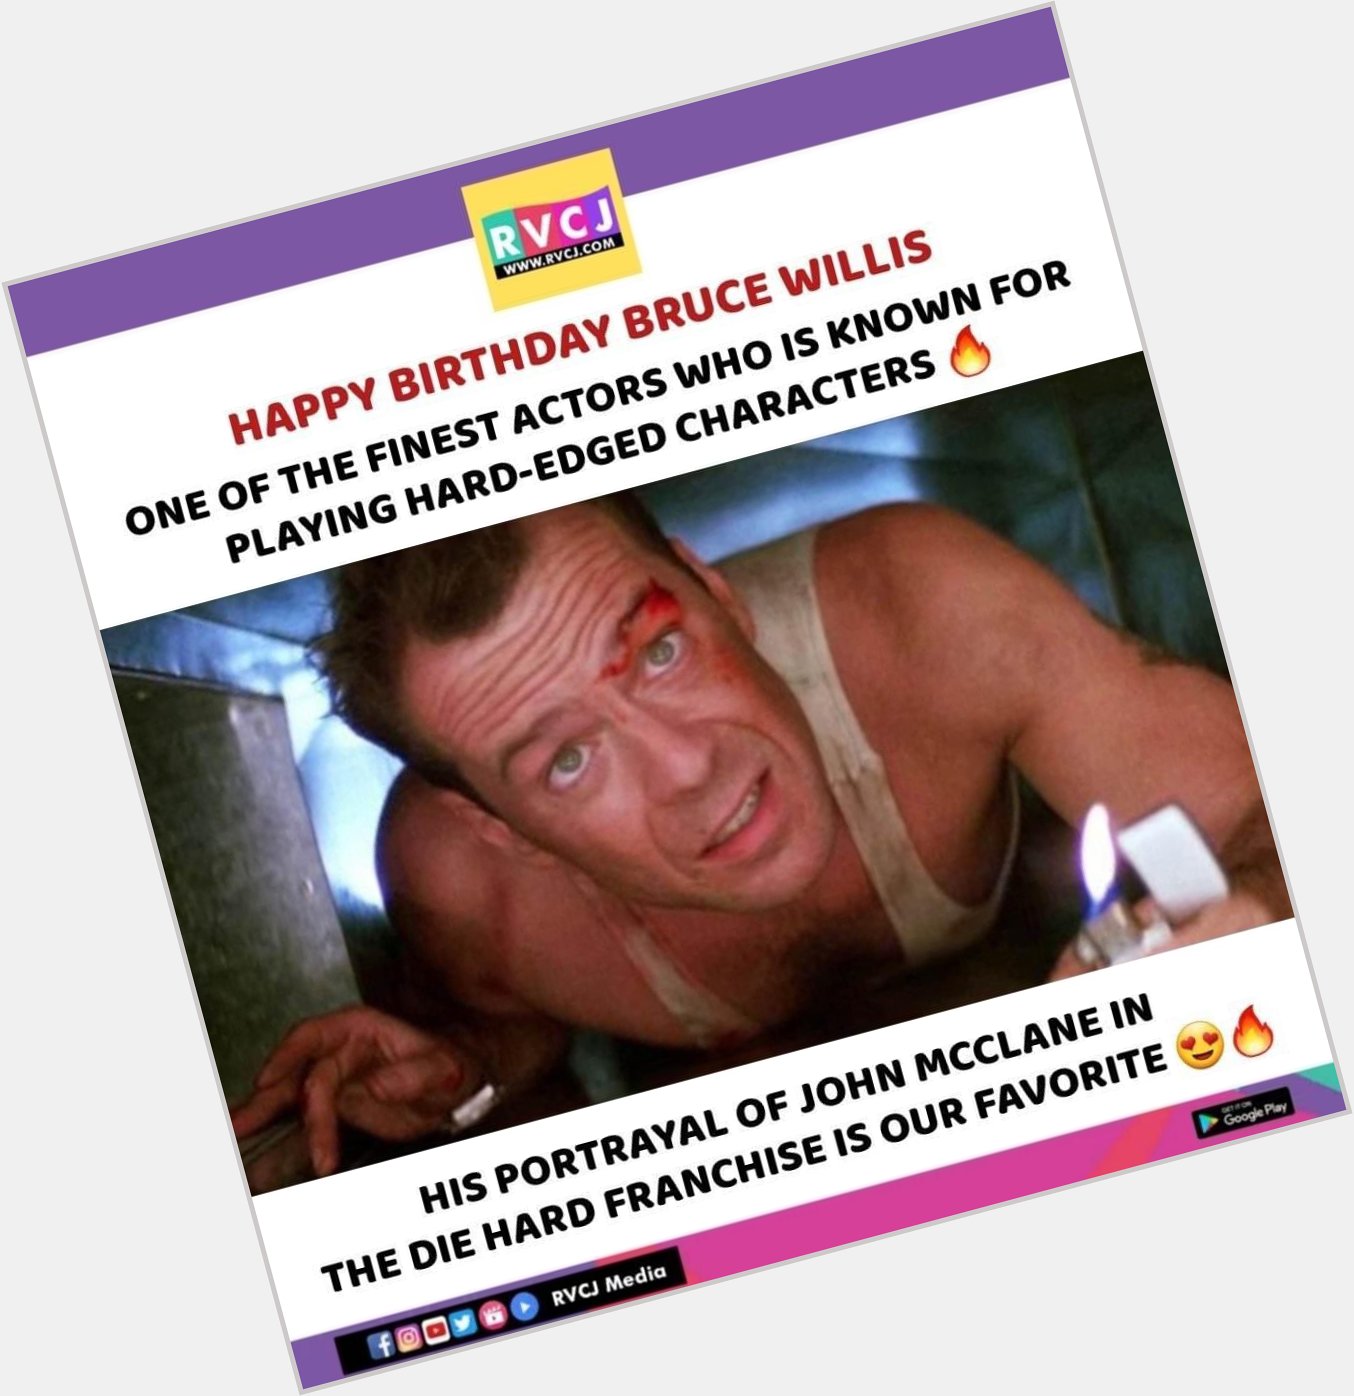 Happy Birthday Bruce Willis!    